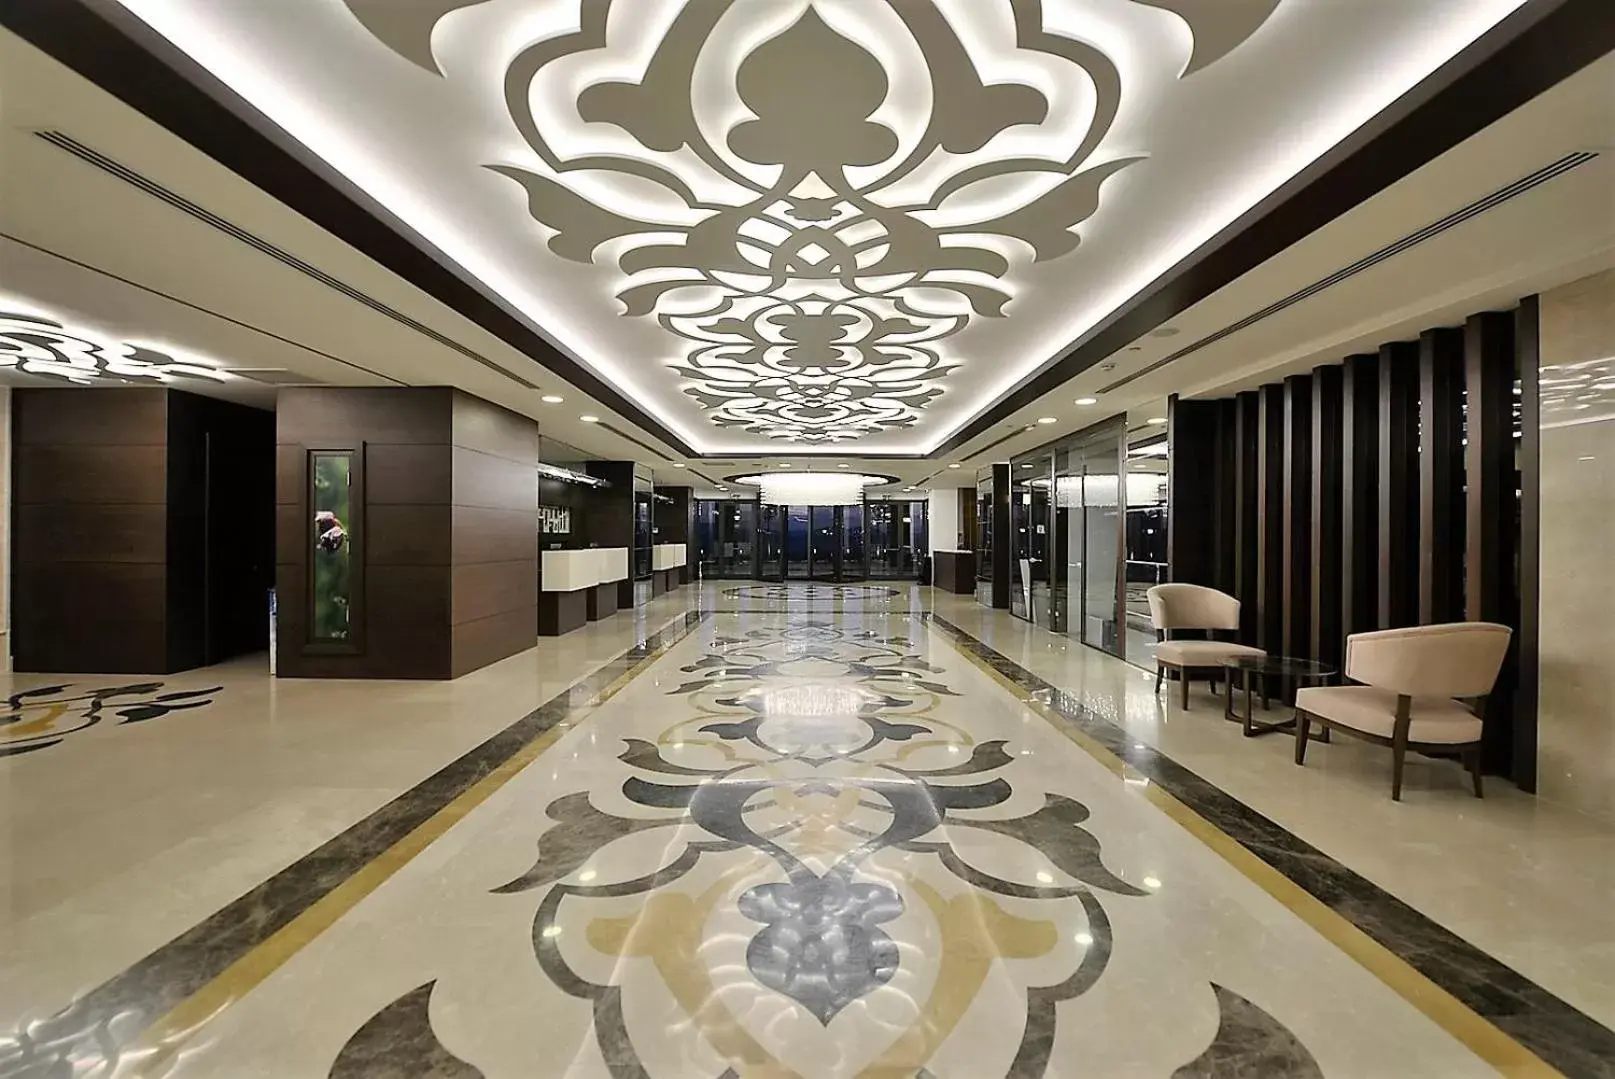 Lobby or reception, Lobby/Reception in Radisson Blu Hotel, Ordu